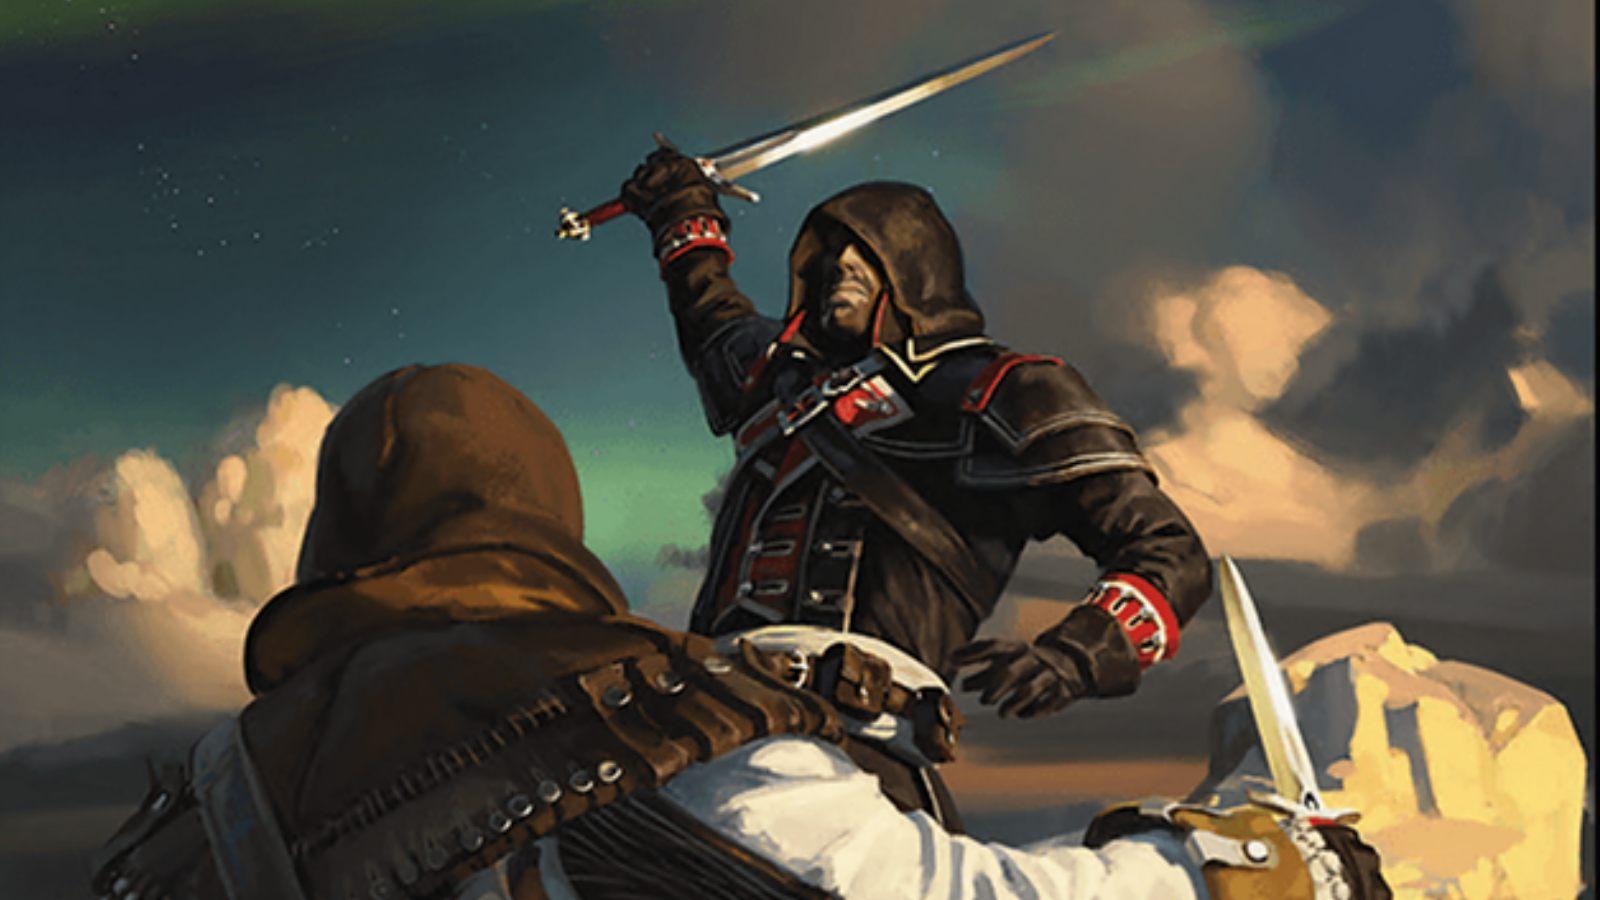 MTG Shay Cormac Templar Assassin